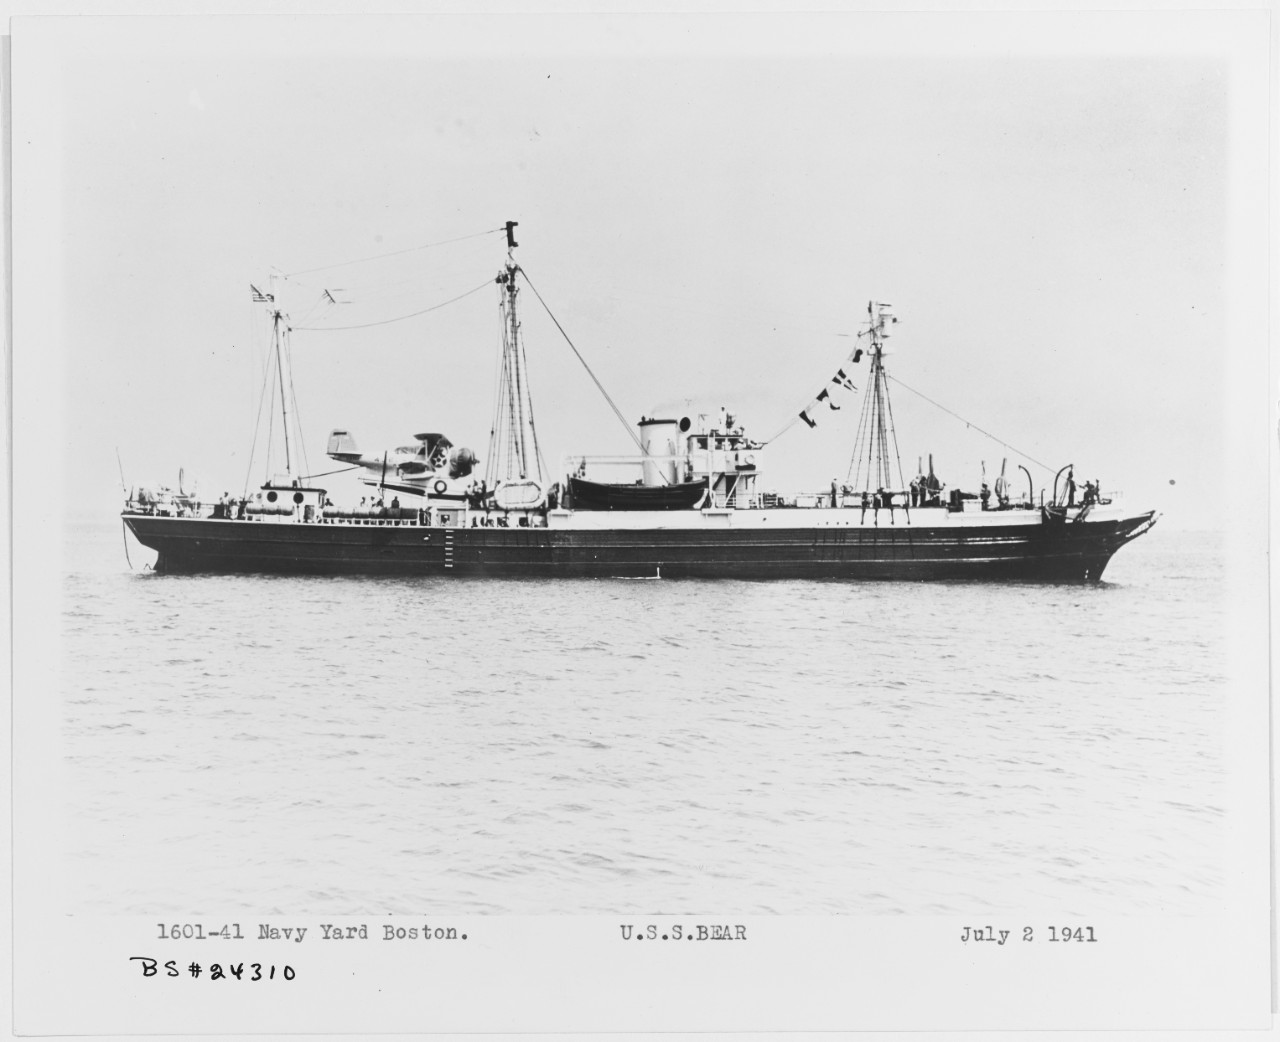 USS BEAR (AG-29)